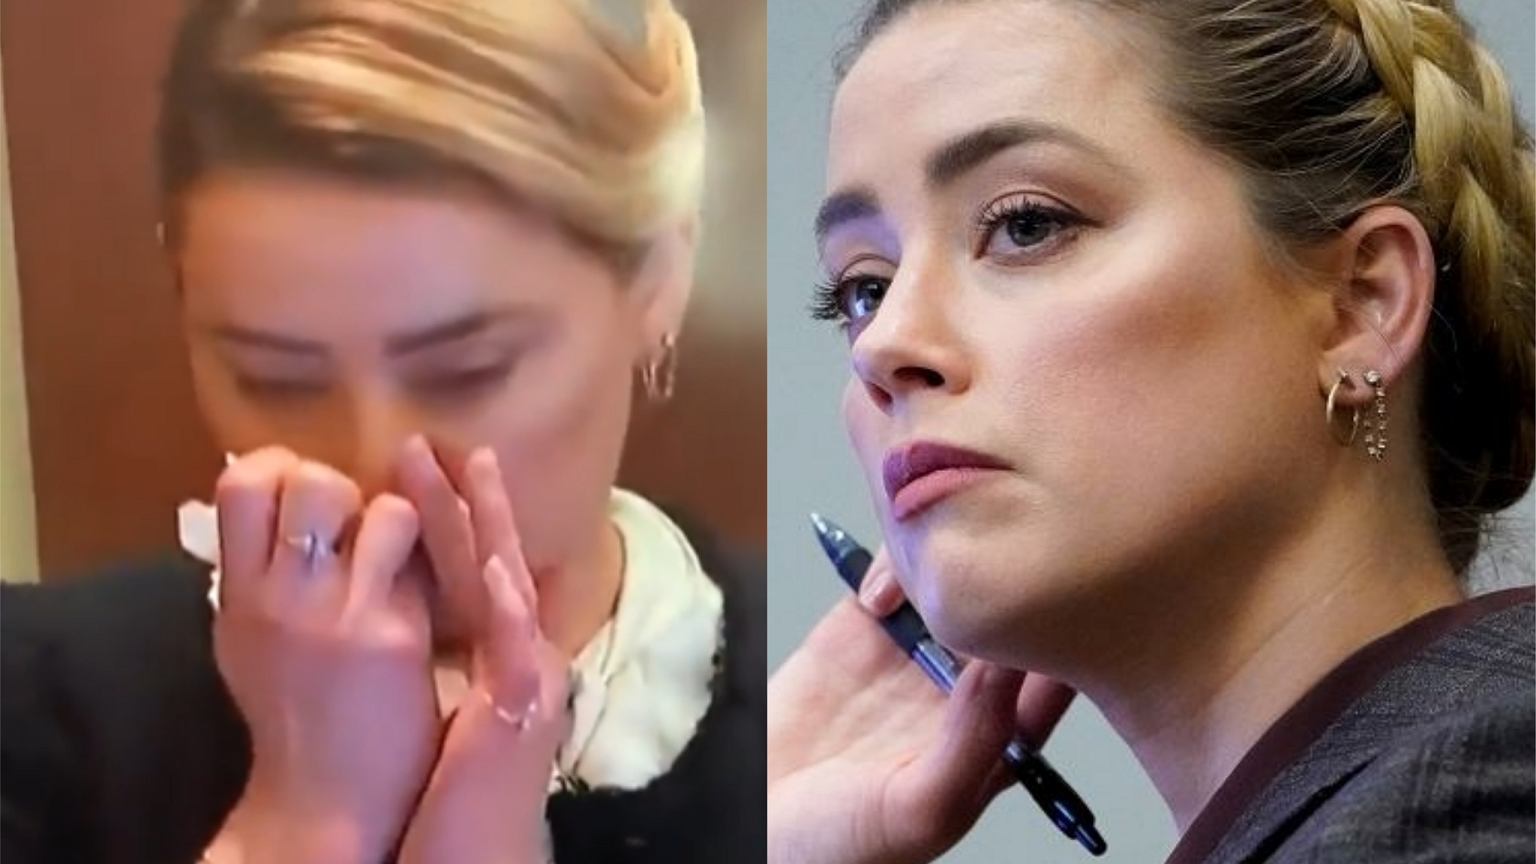 Nagranie Amber Heard wywołało burzę w sieci. Wciągała kokainę? Internauci przecierają oczy ze zdumienia - Plotek.pl